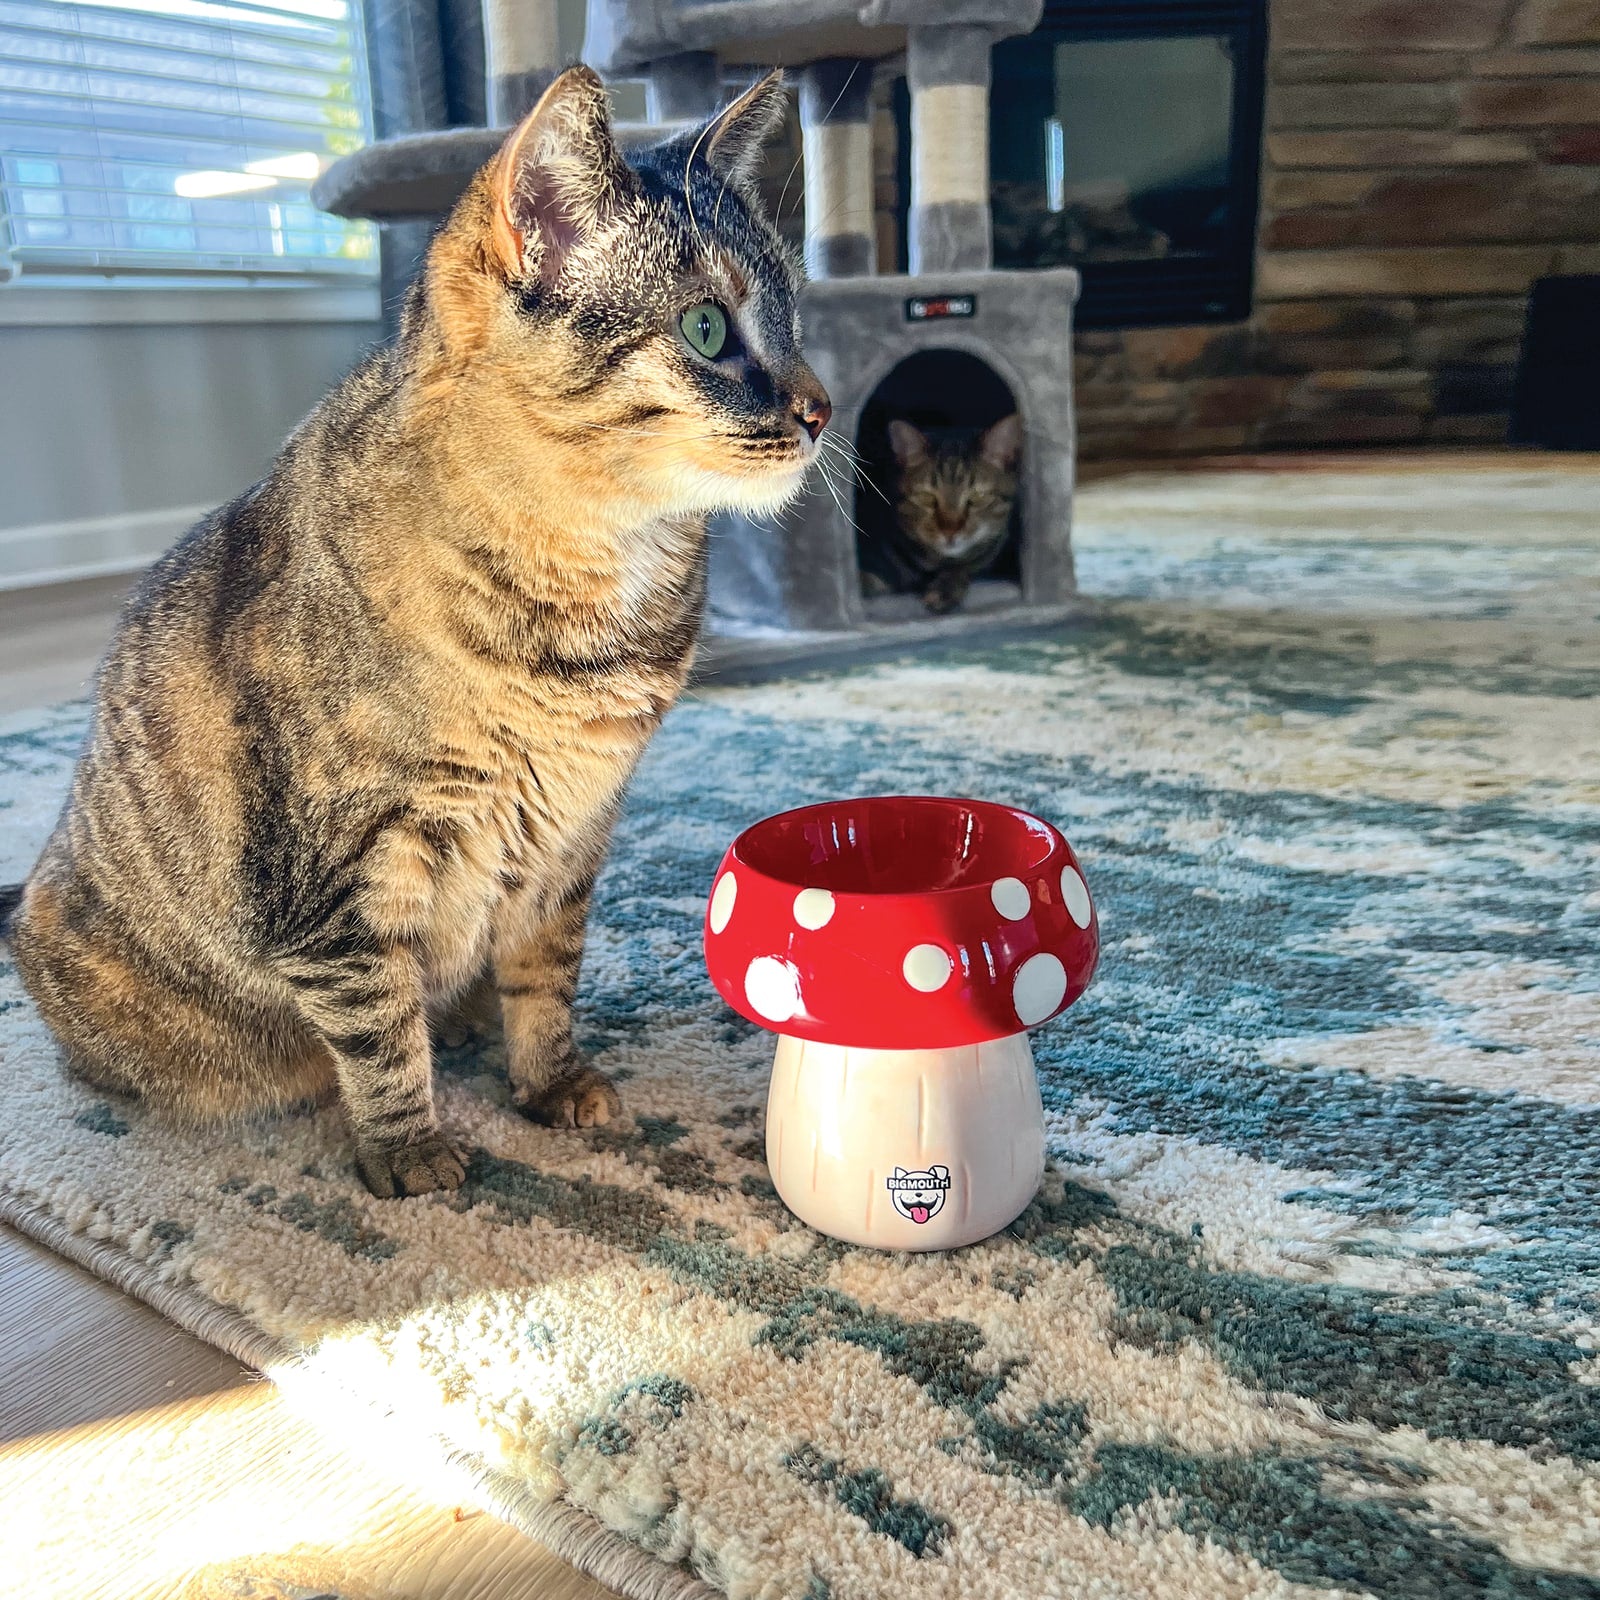 BigMouth 'Shroom' Cat and Dog Bowl